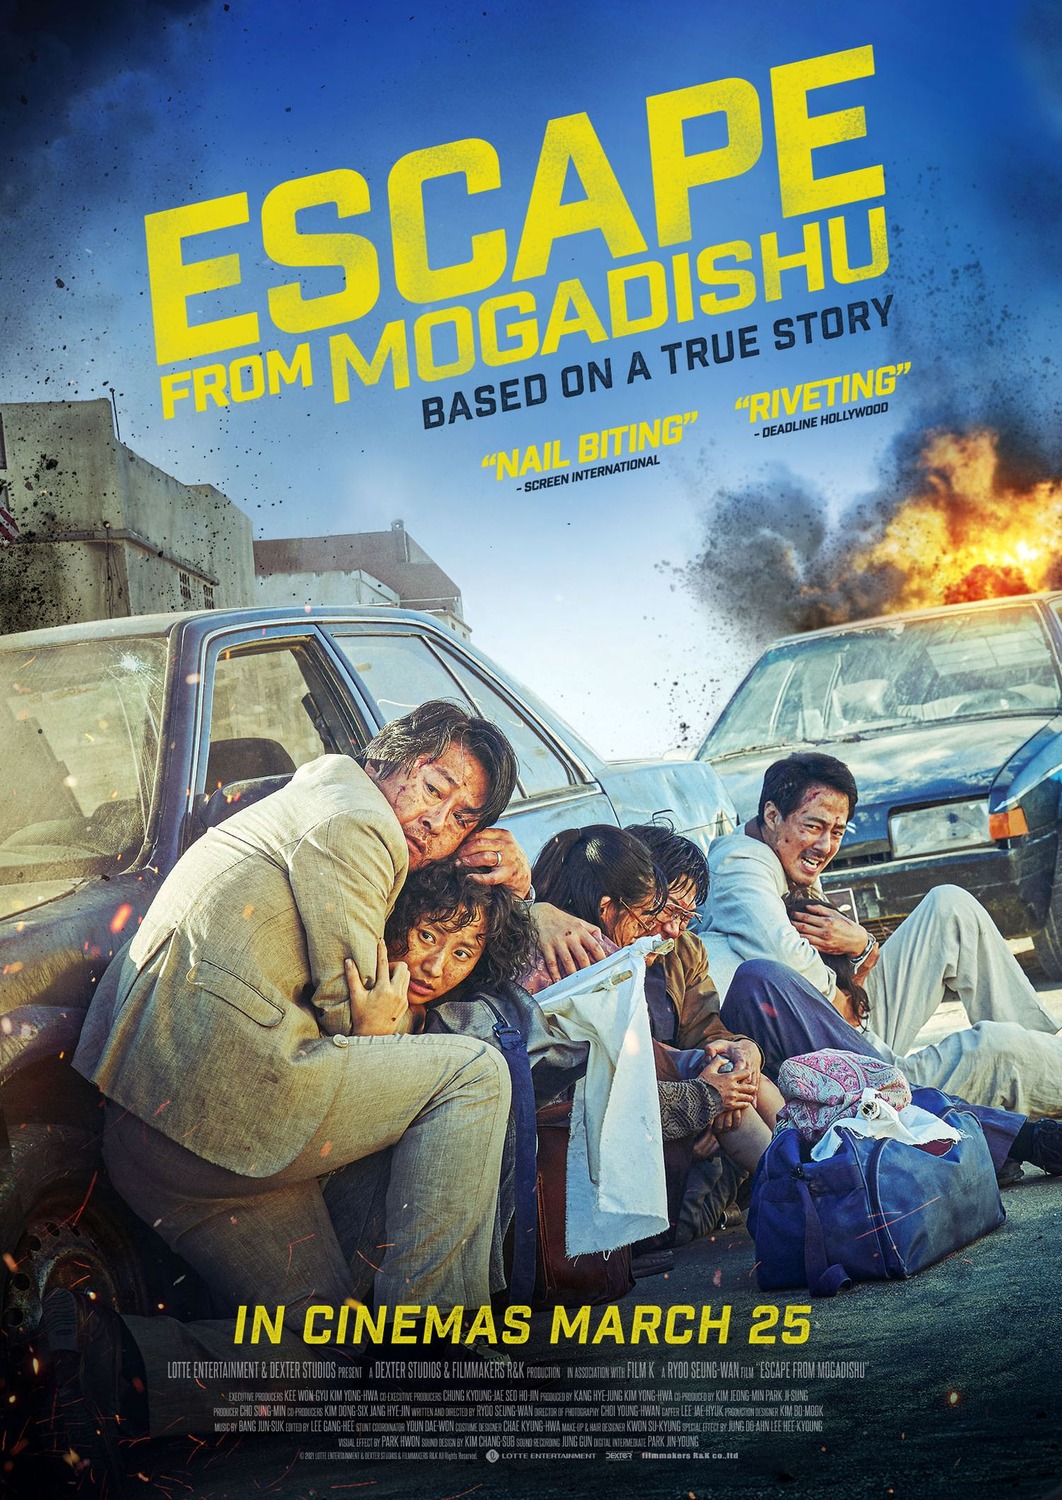 Extra Large Movie Poster Image for Mogadishu (#2 of 2)